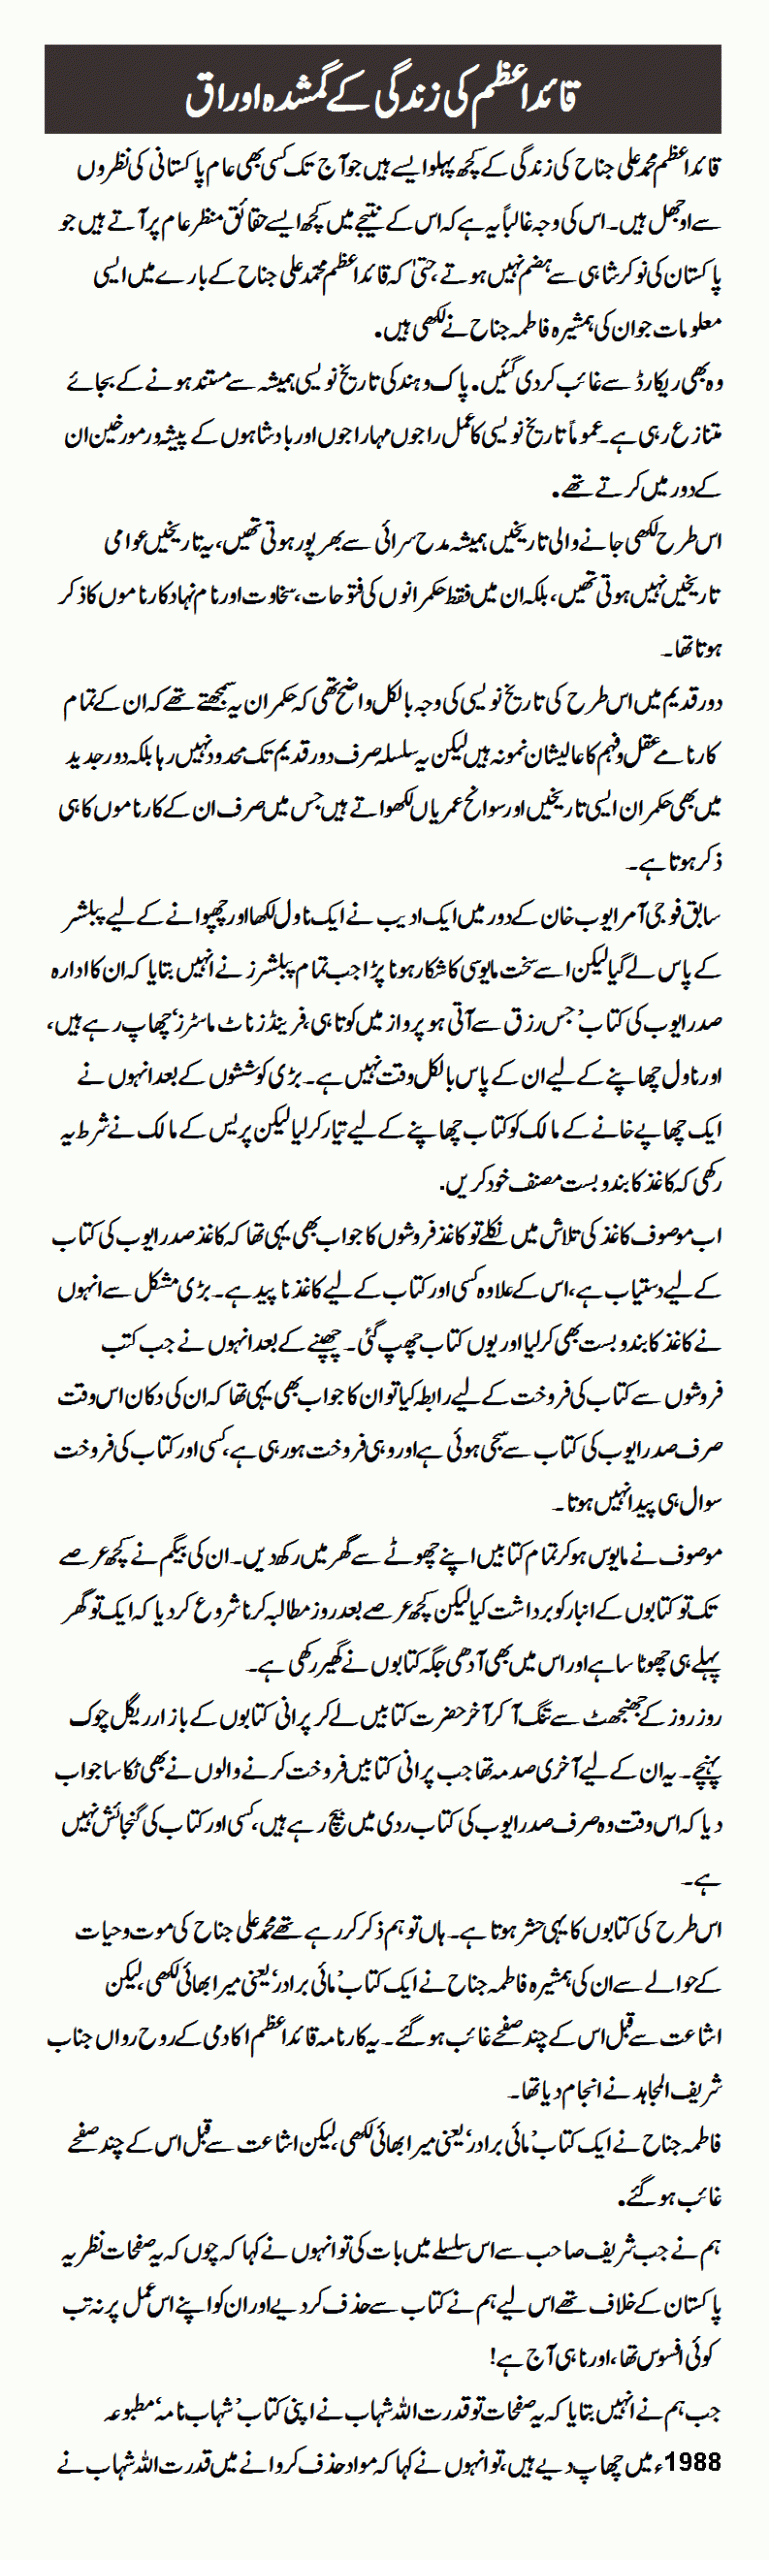 Lost History Of Quaid-e-Azam's Life 1